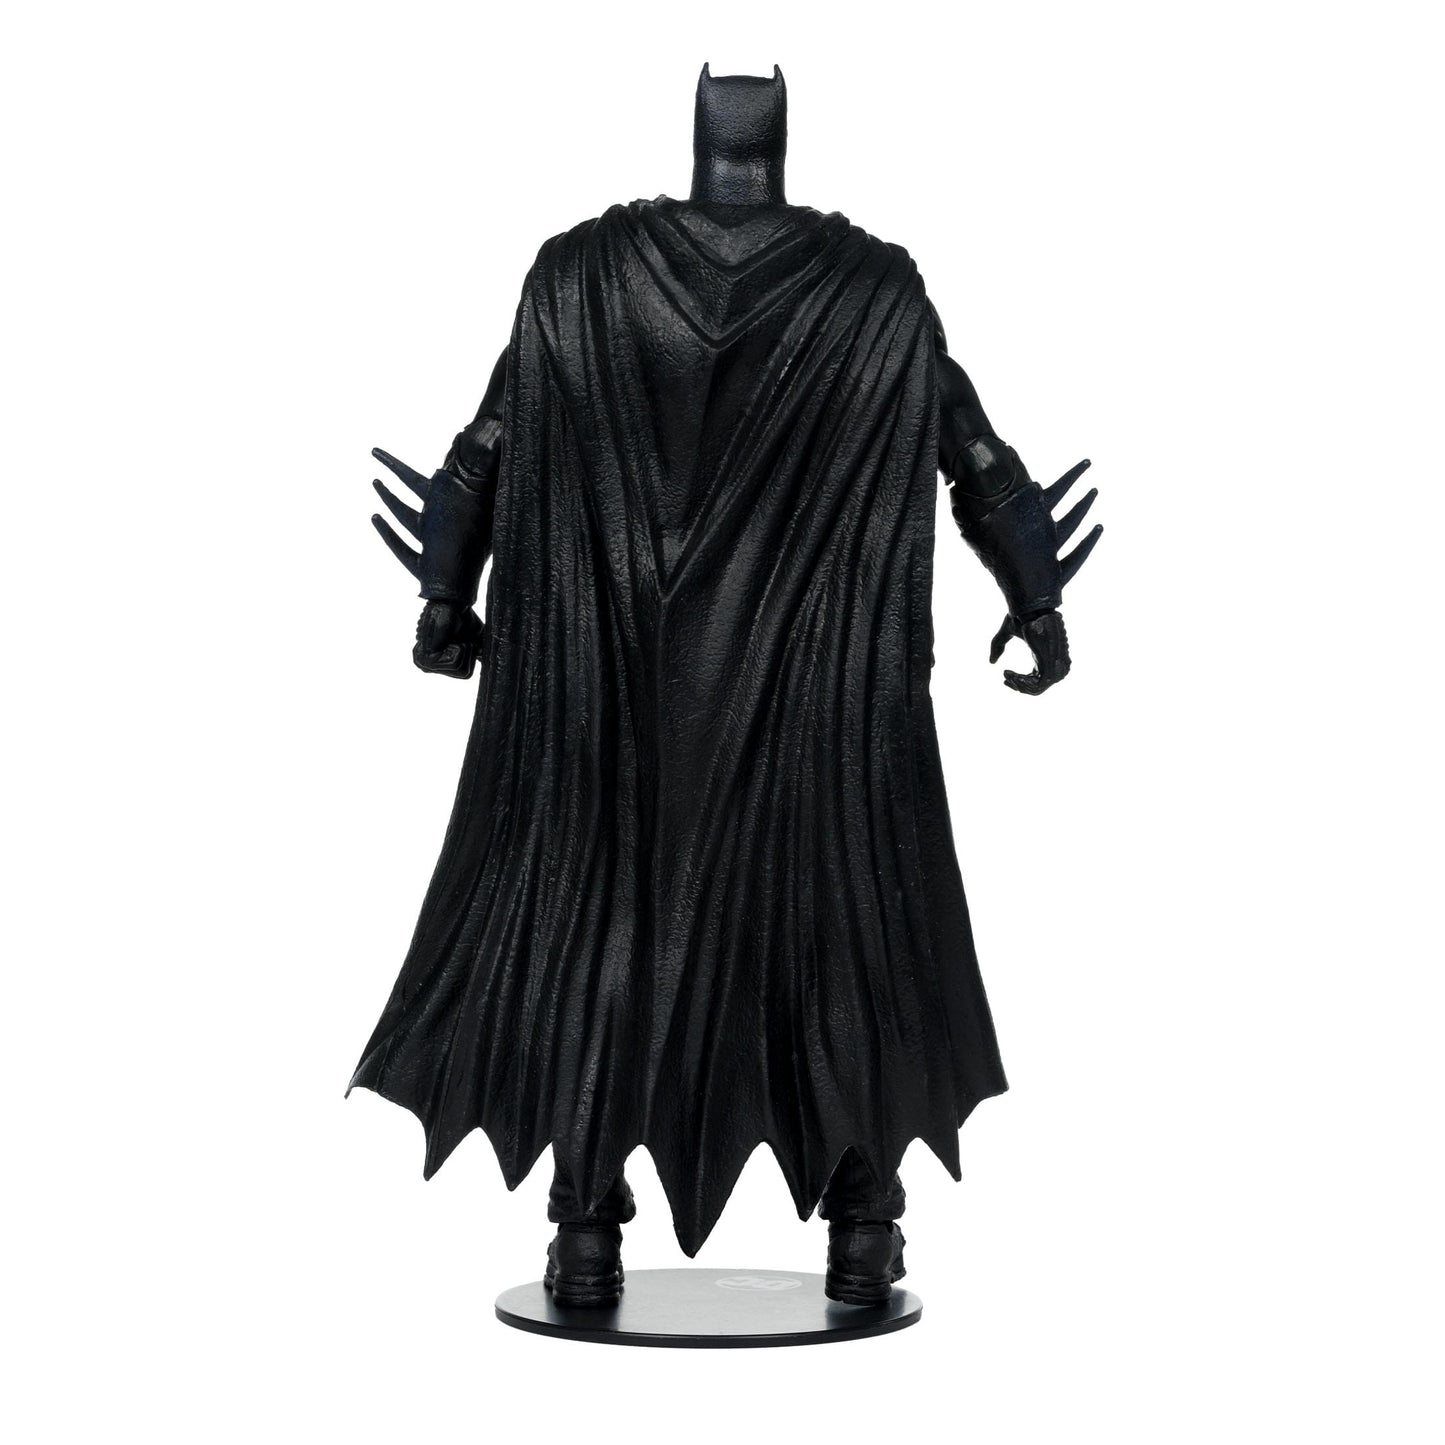 McFarlane DC Multiverse Build A Actionfigur JLA Batman 18cm